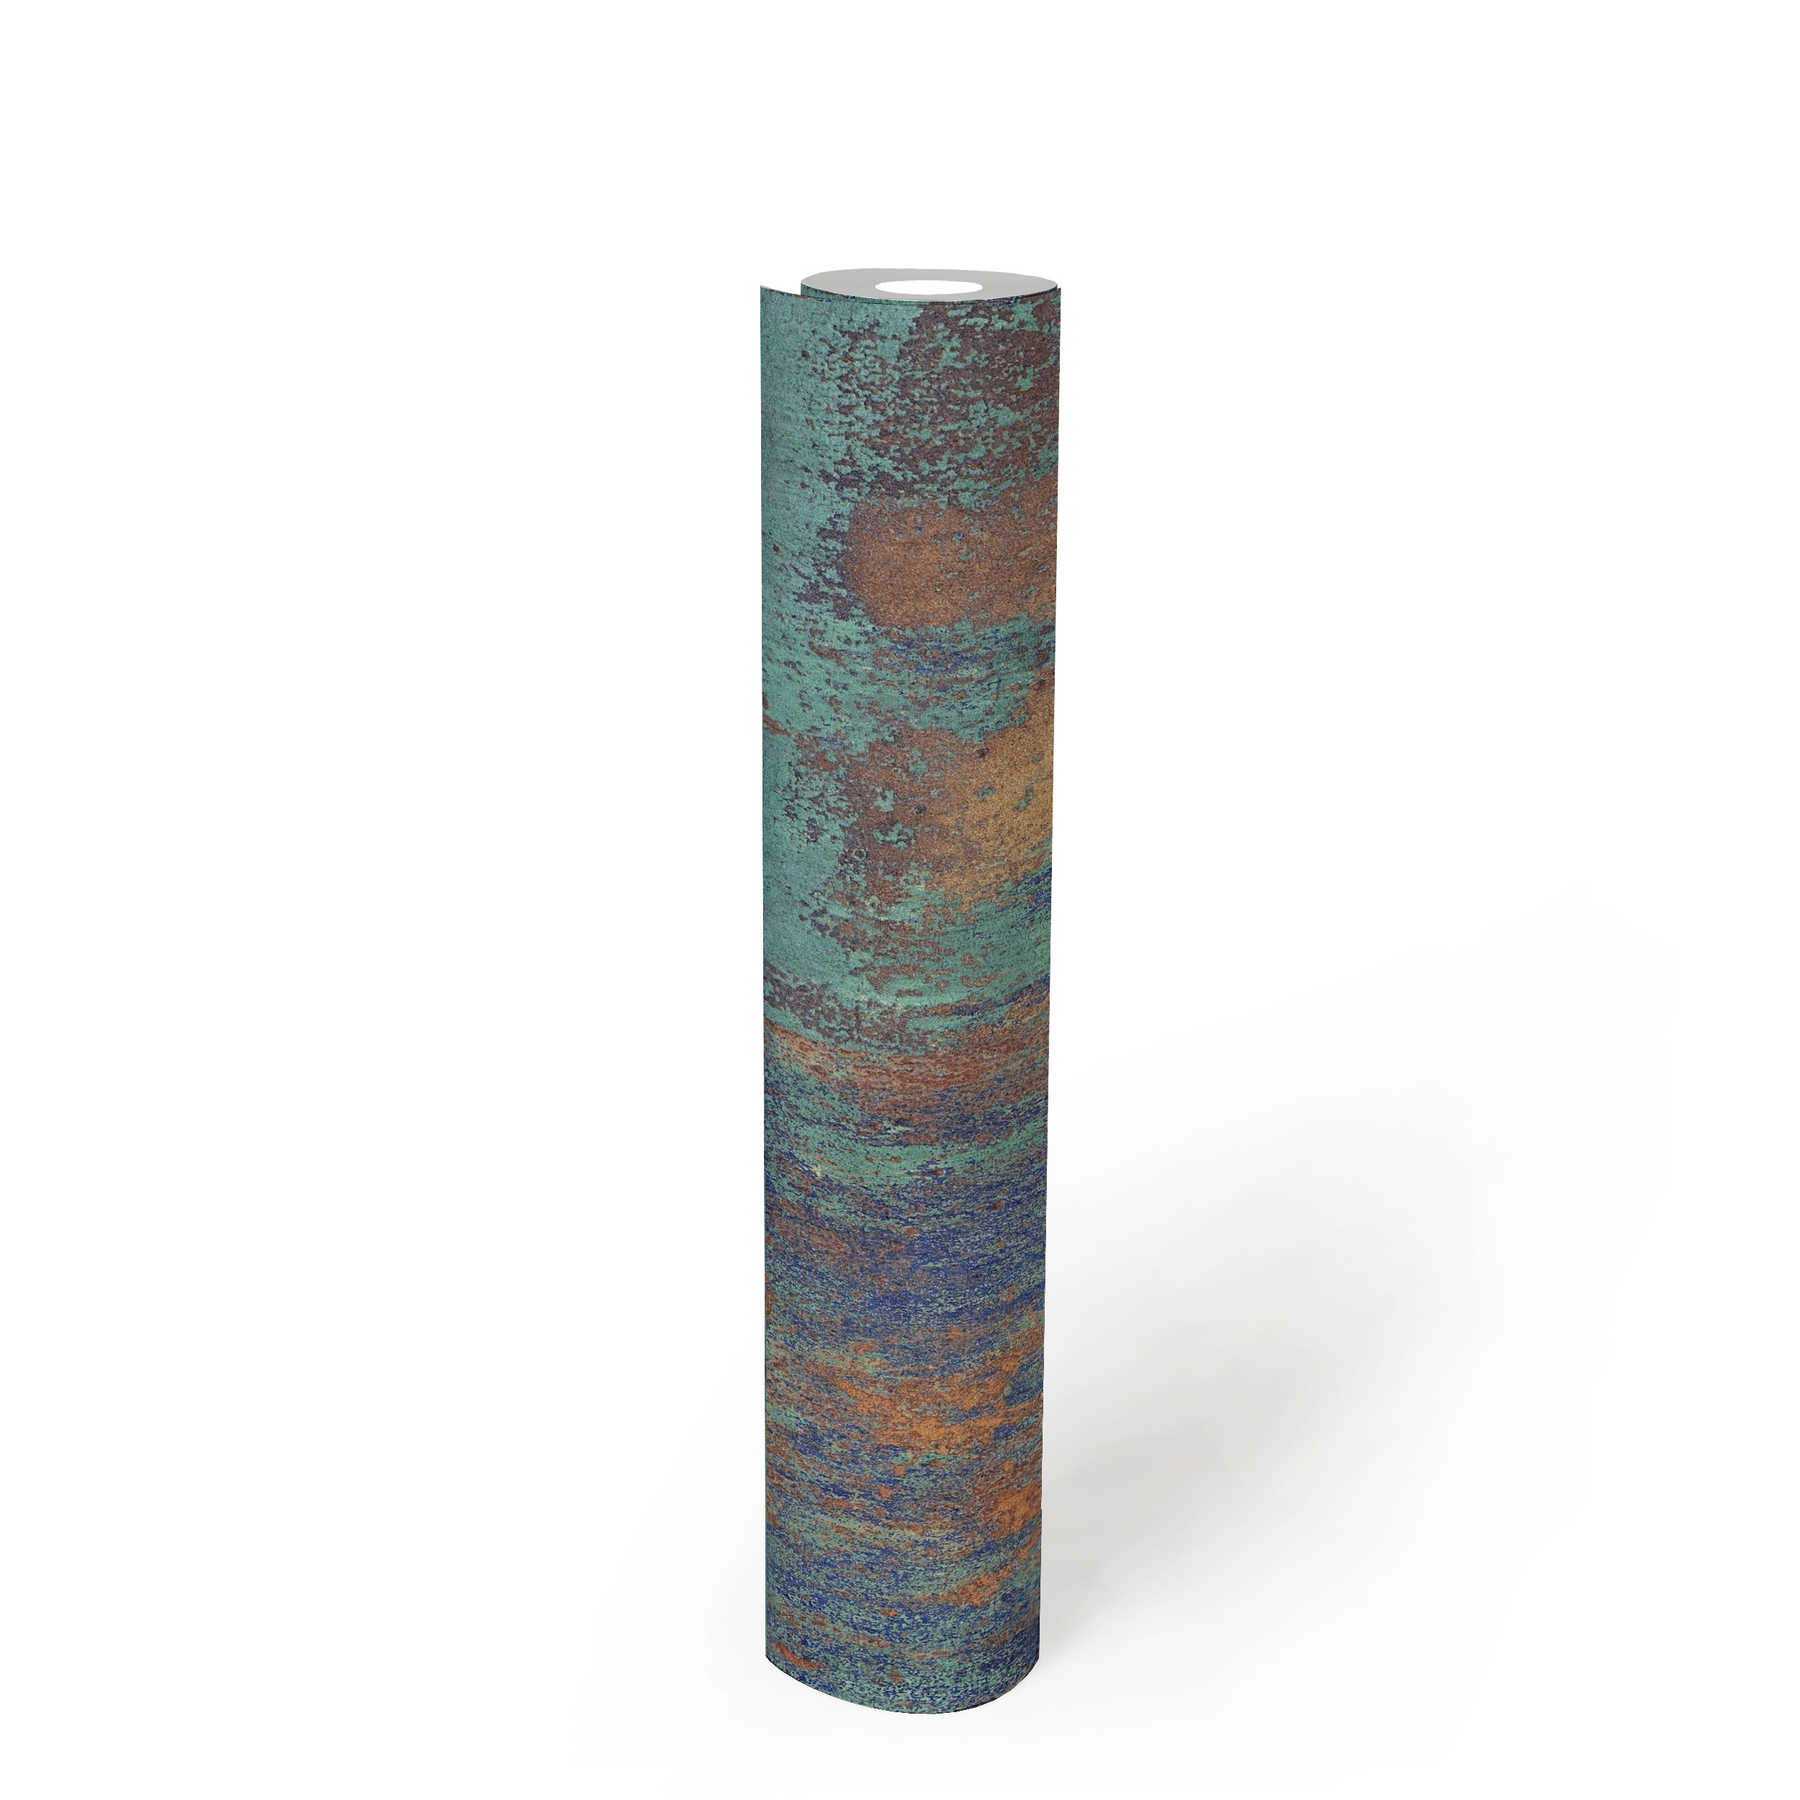             Papel pintado no tejido de diseño patinado con efectos de óxido y cobre - azul, marrón, cobre
        